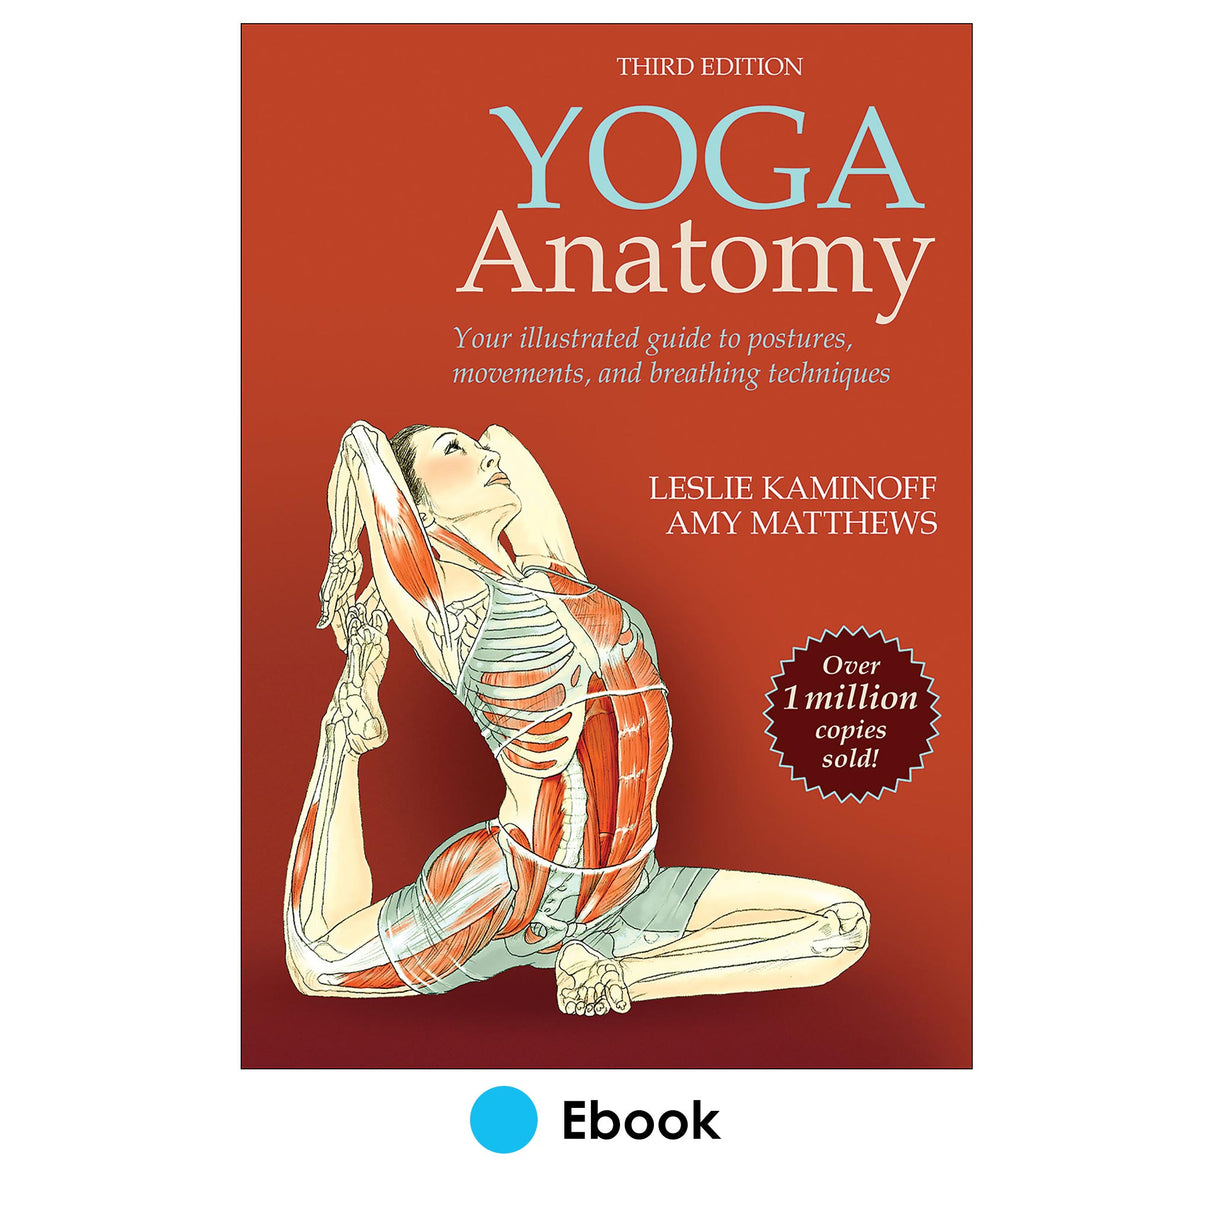 Yoga Anatomy 3rd Edition epub